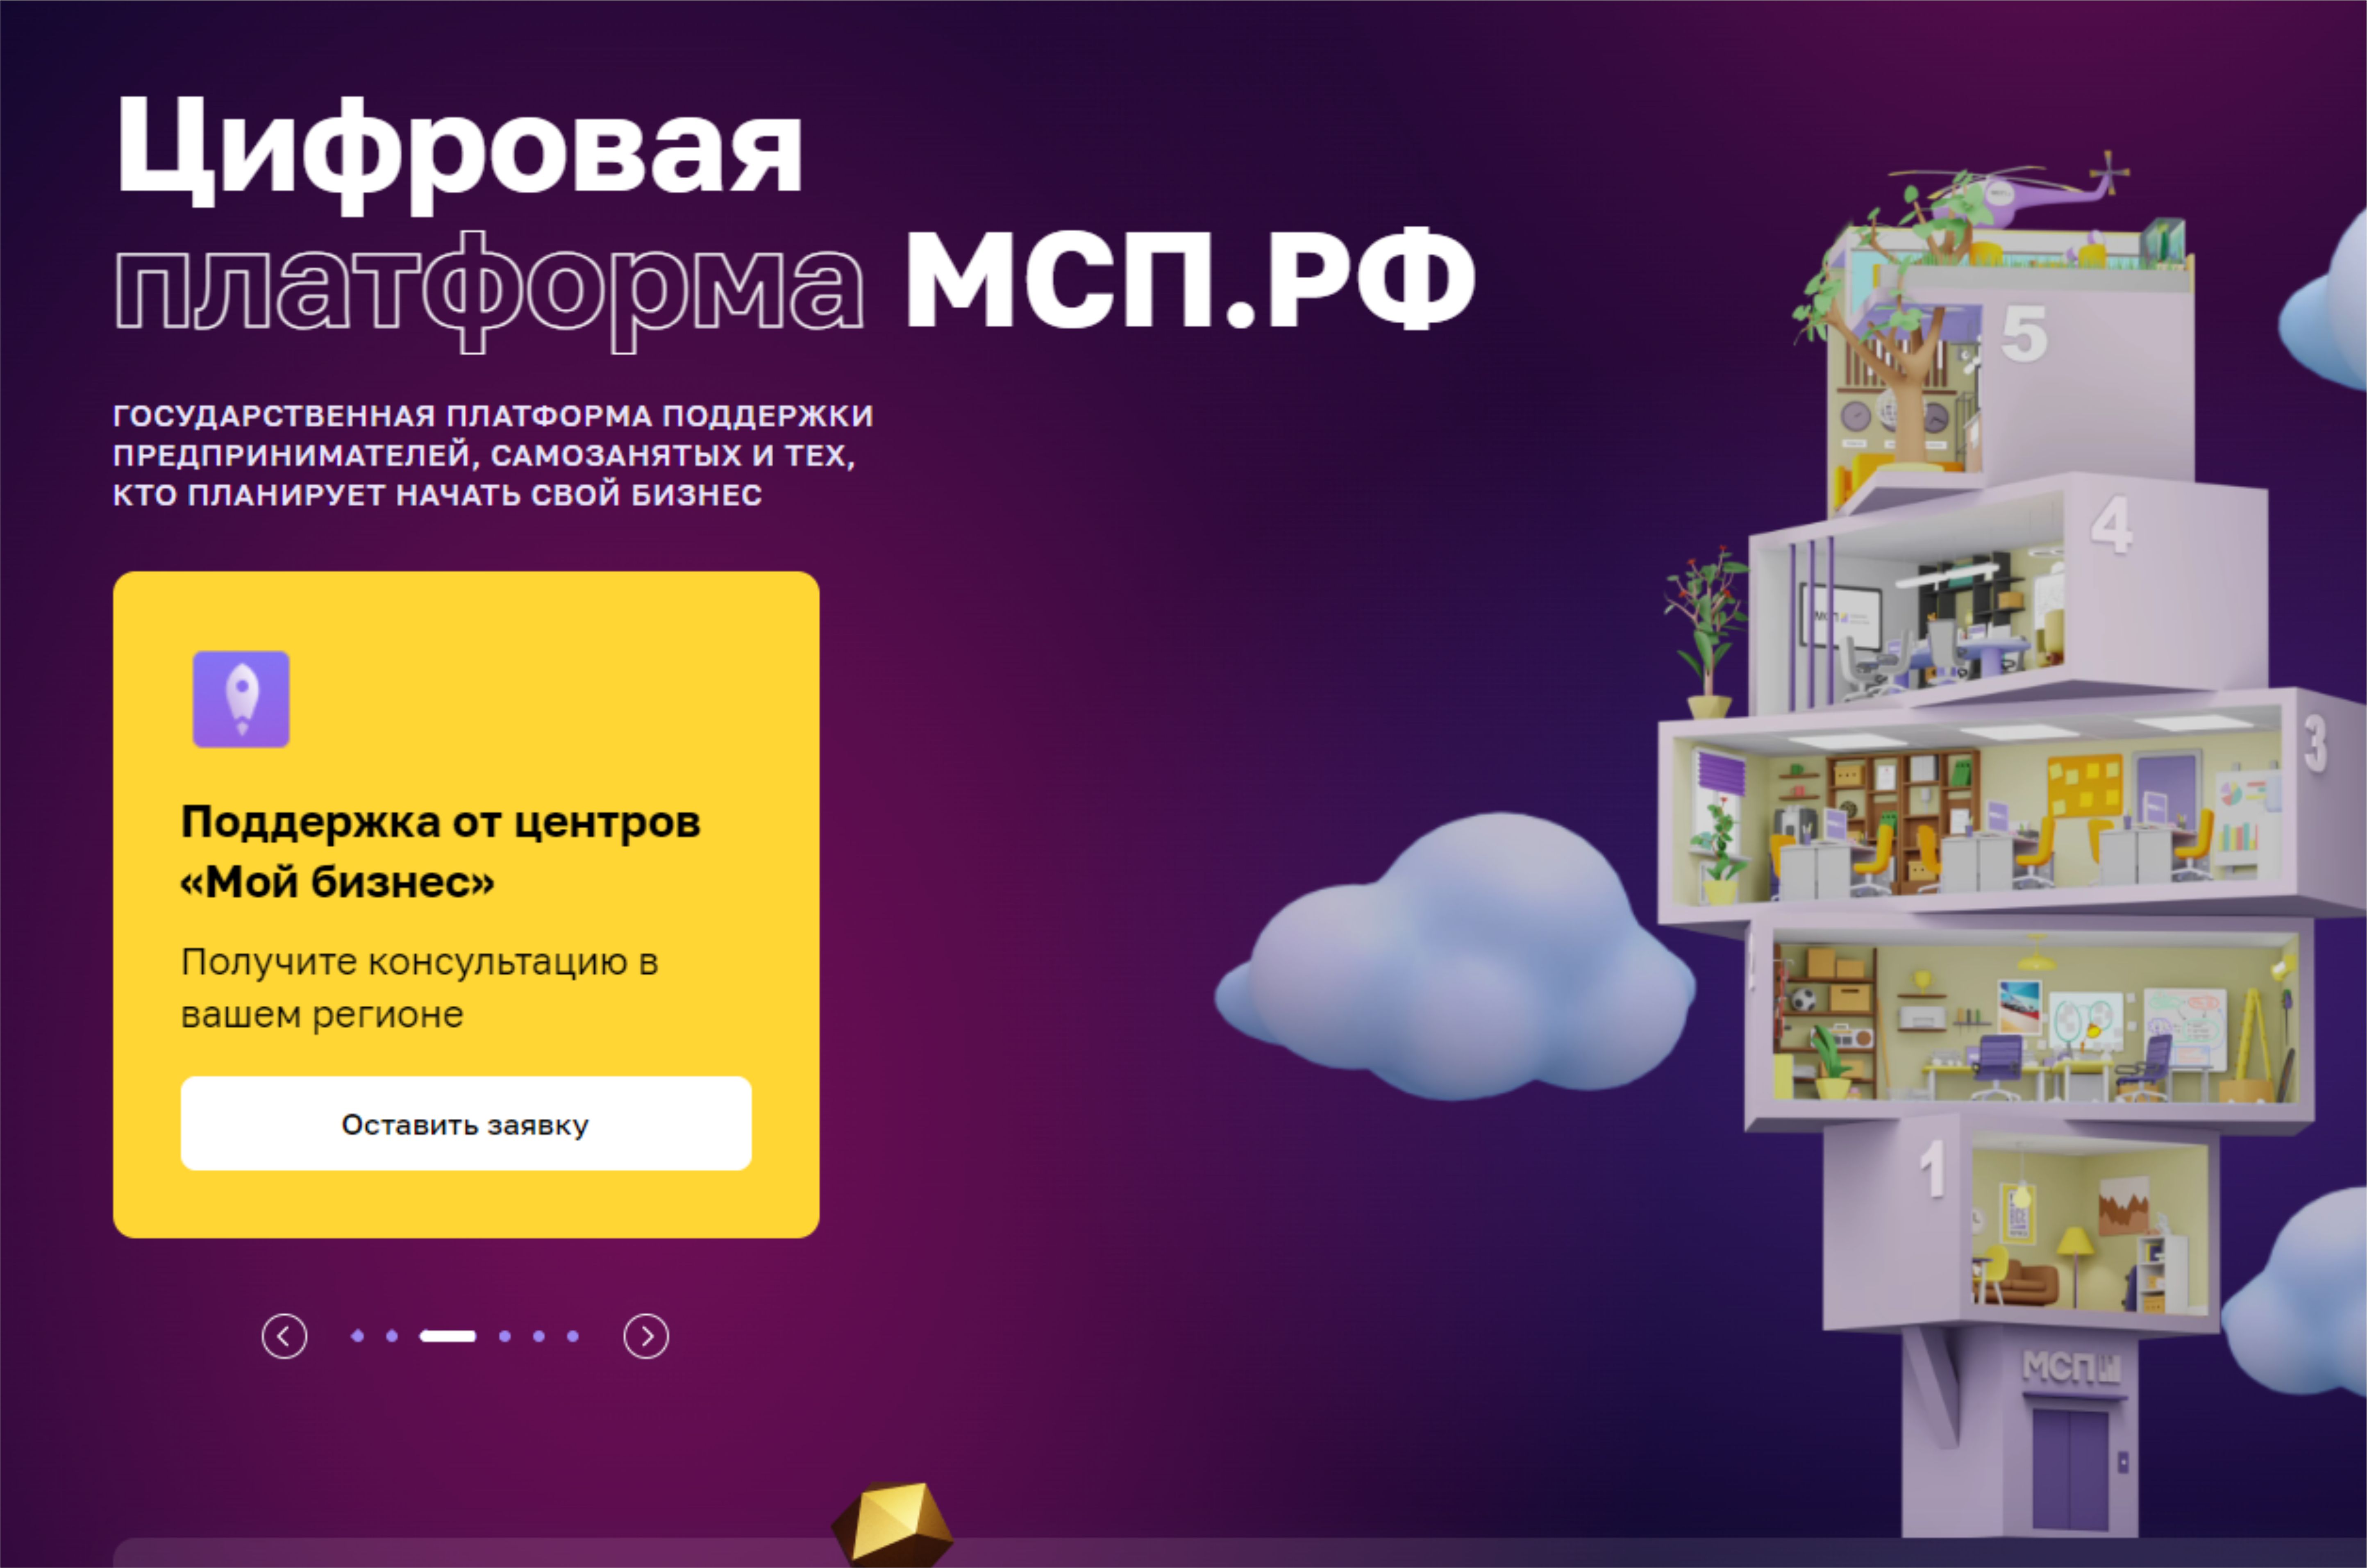 За два года существования цифровой платформы МСП.РФ пользователи более 4 миллионов раз задействовали предлагаемые сервисы и продукты